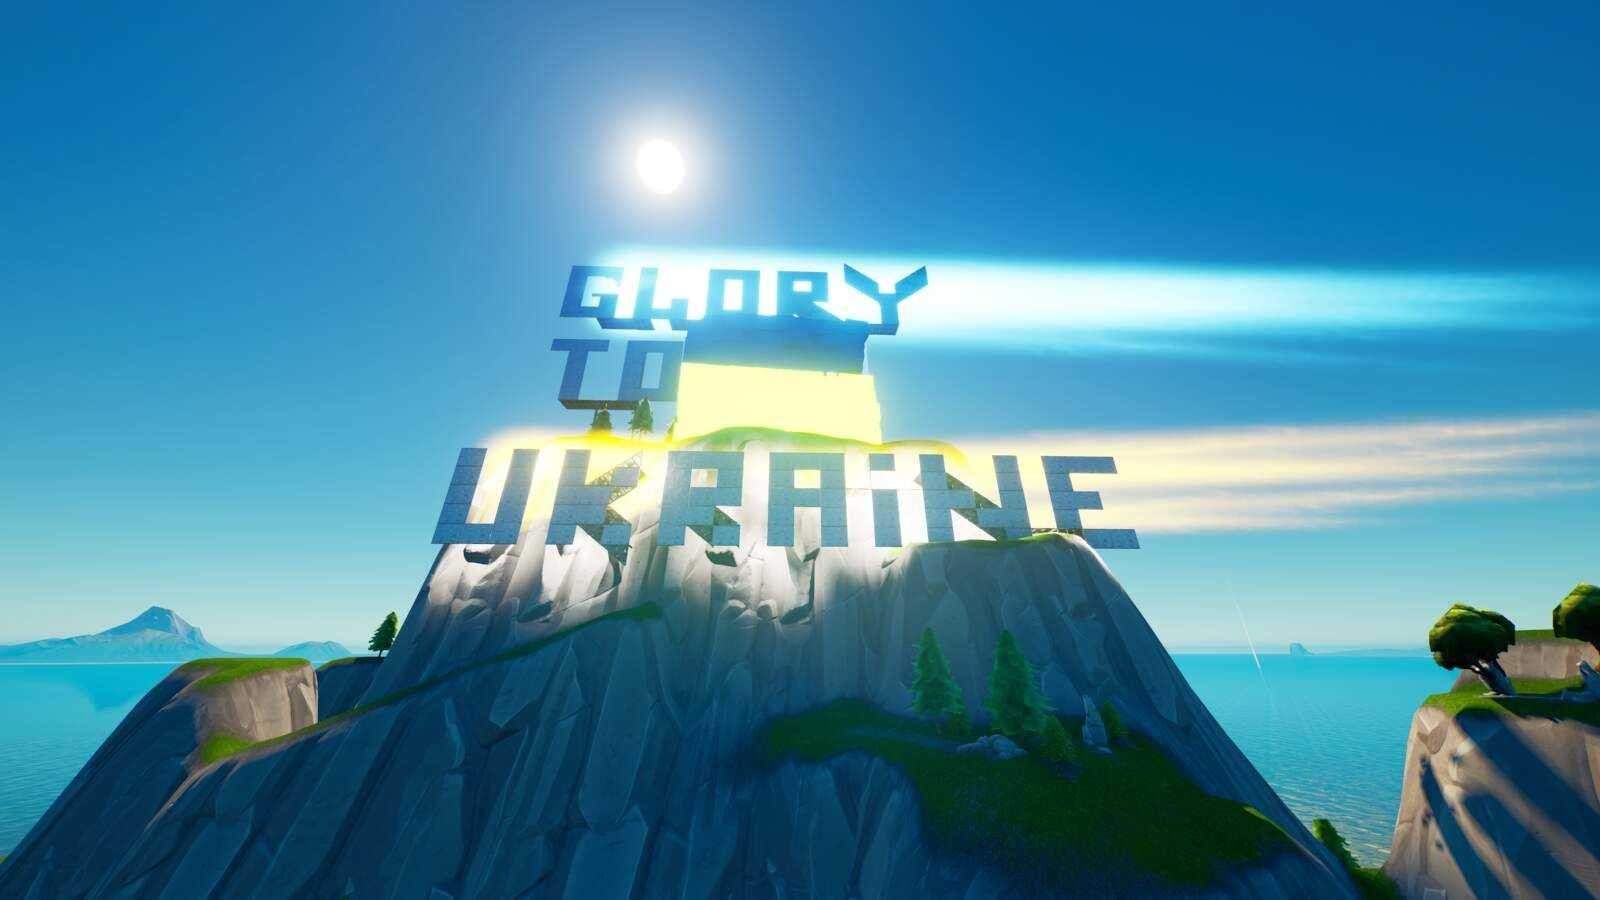 Glory to Ukraine 24-02-2022